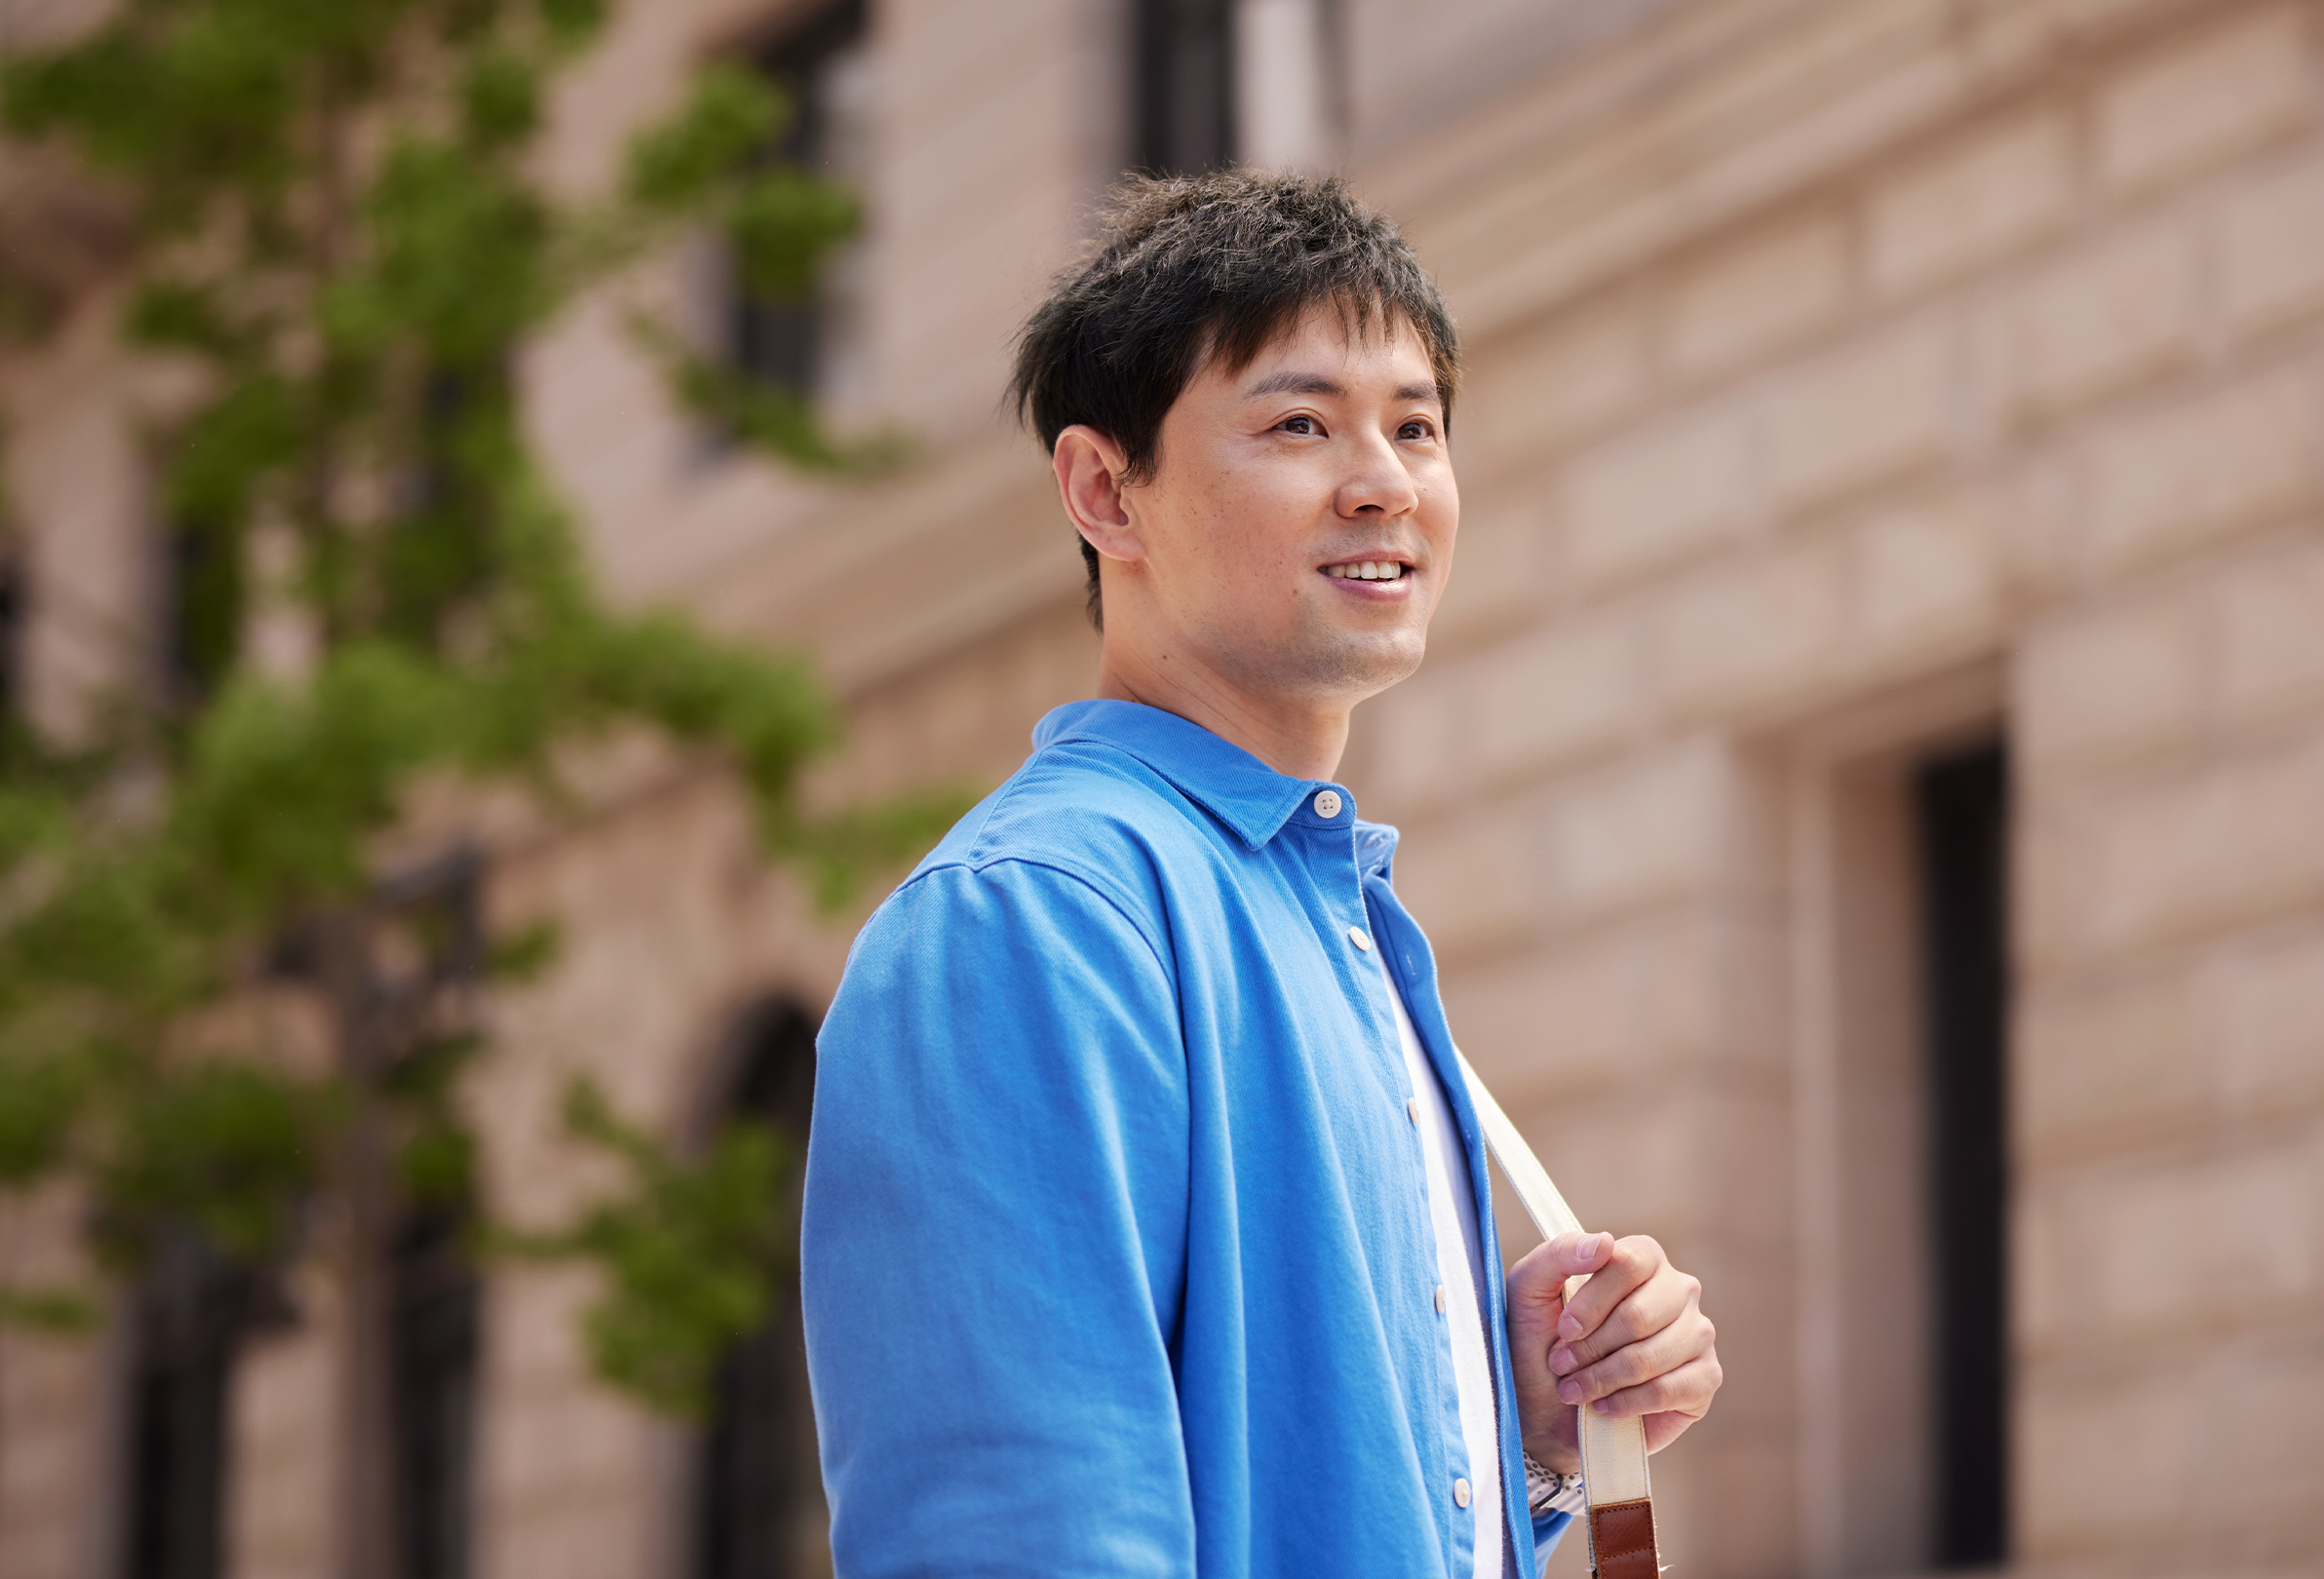 En smilende Apple-medarbejder, som bærer på en skuldertaske, står uden for en kontorbygning af mursten.